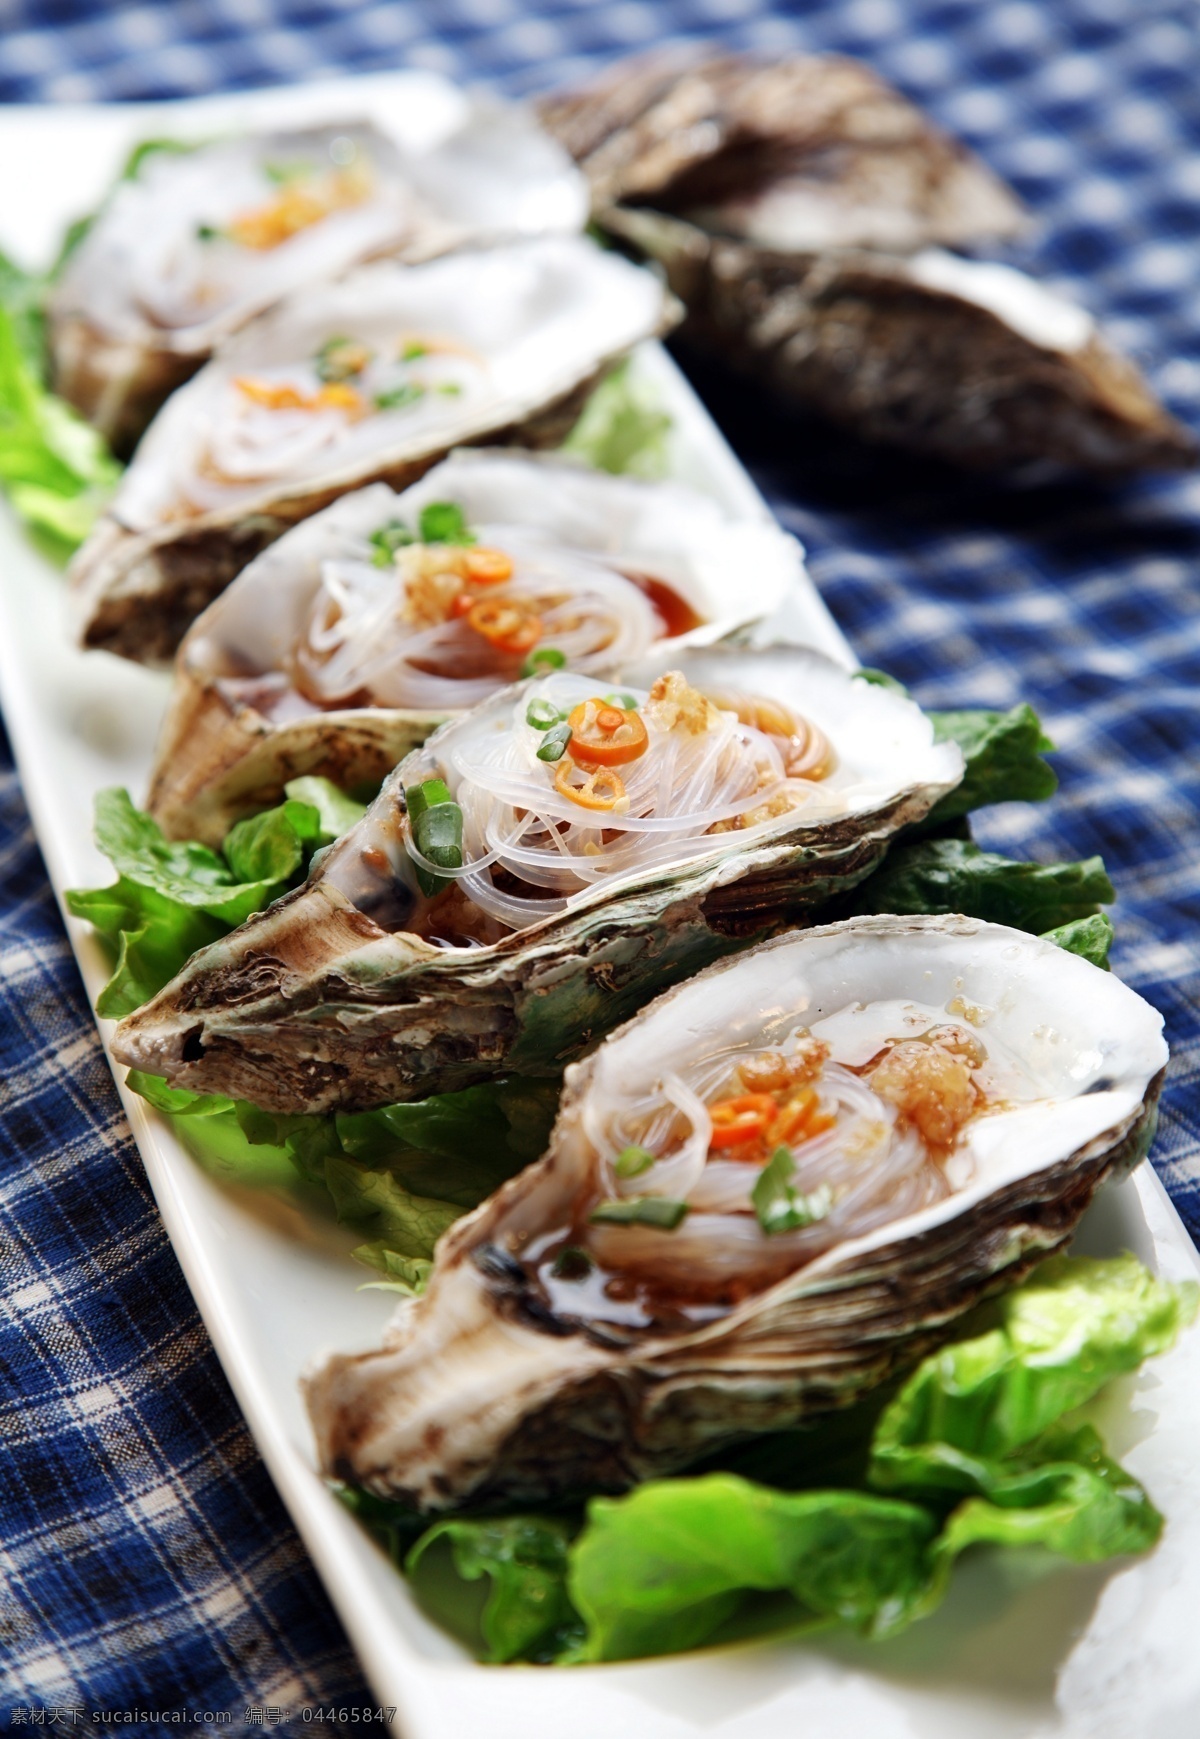 海鲜 扇贝 贝壳 海味 海产品 海货 大排档 餐饮美食 传统美食